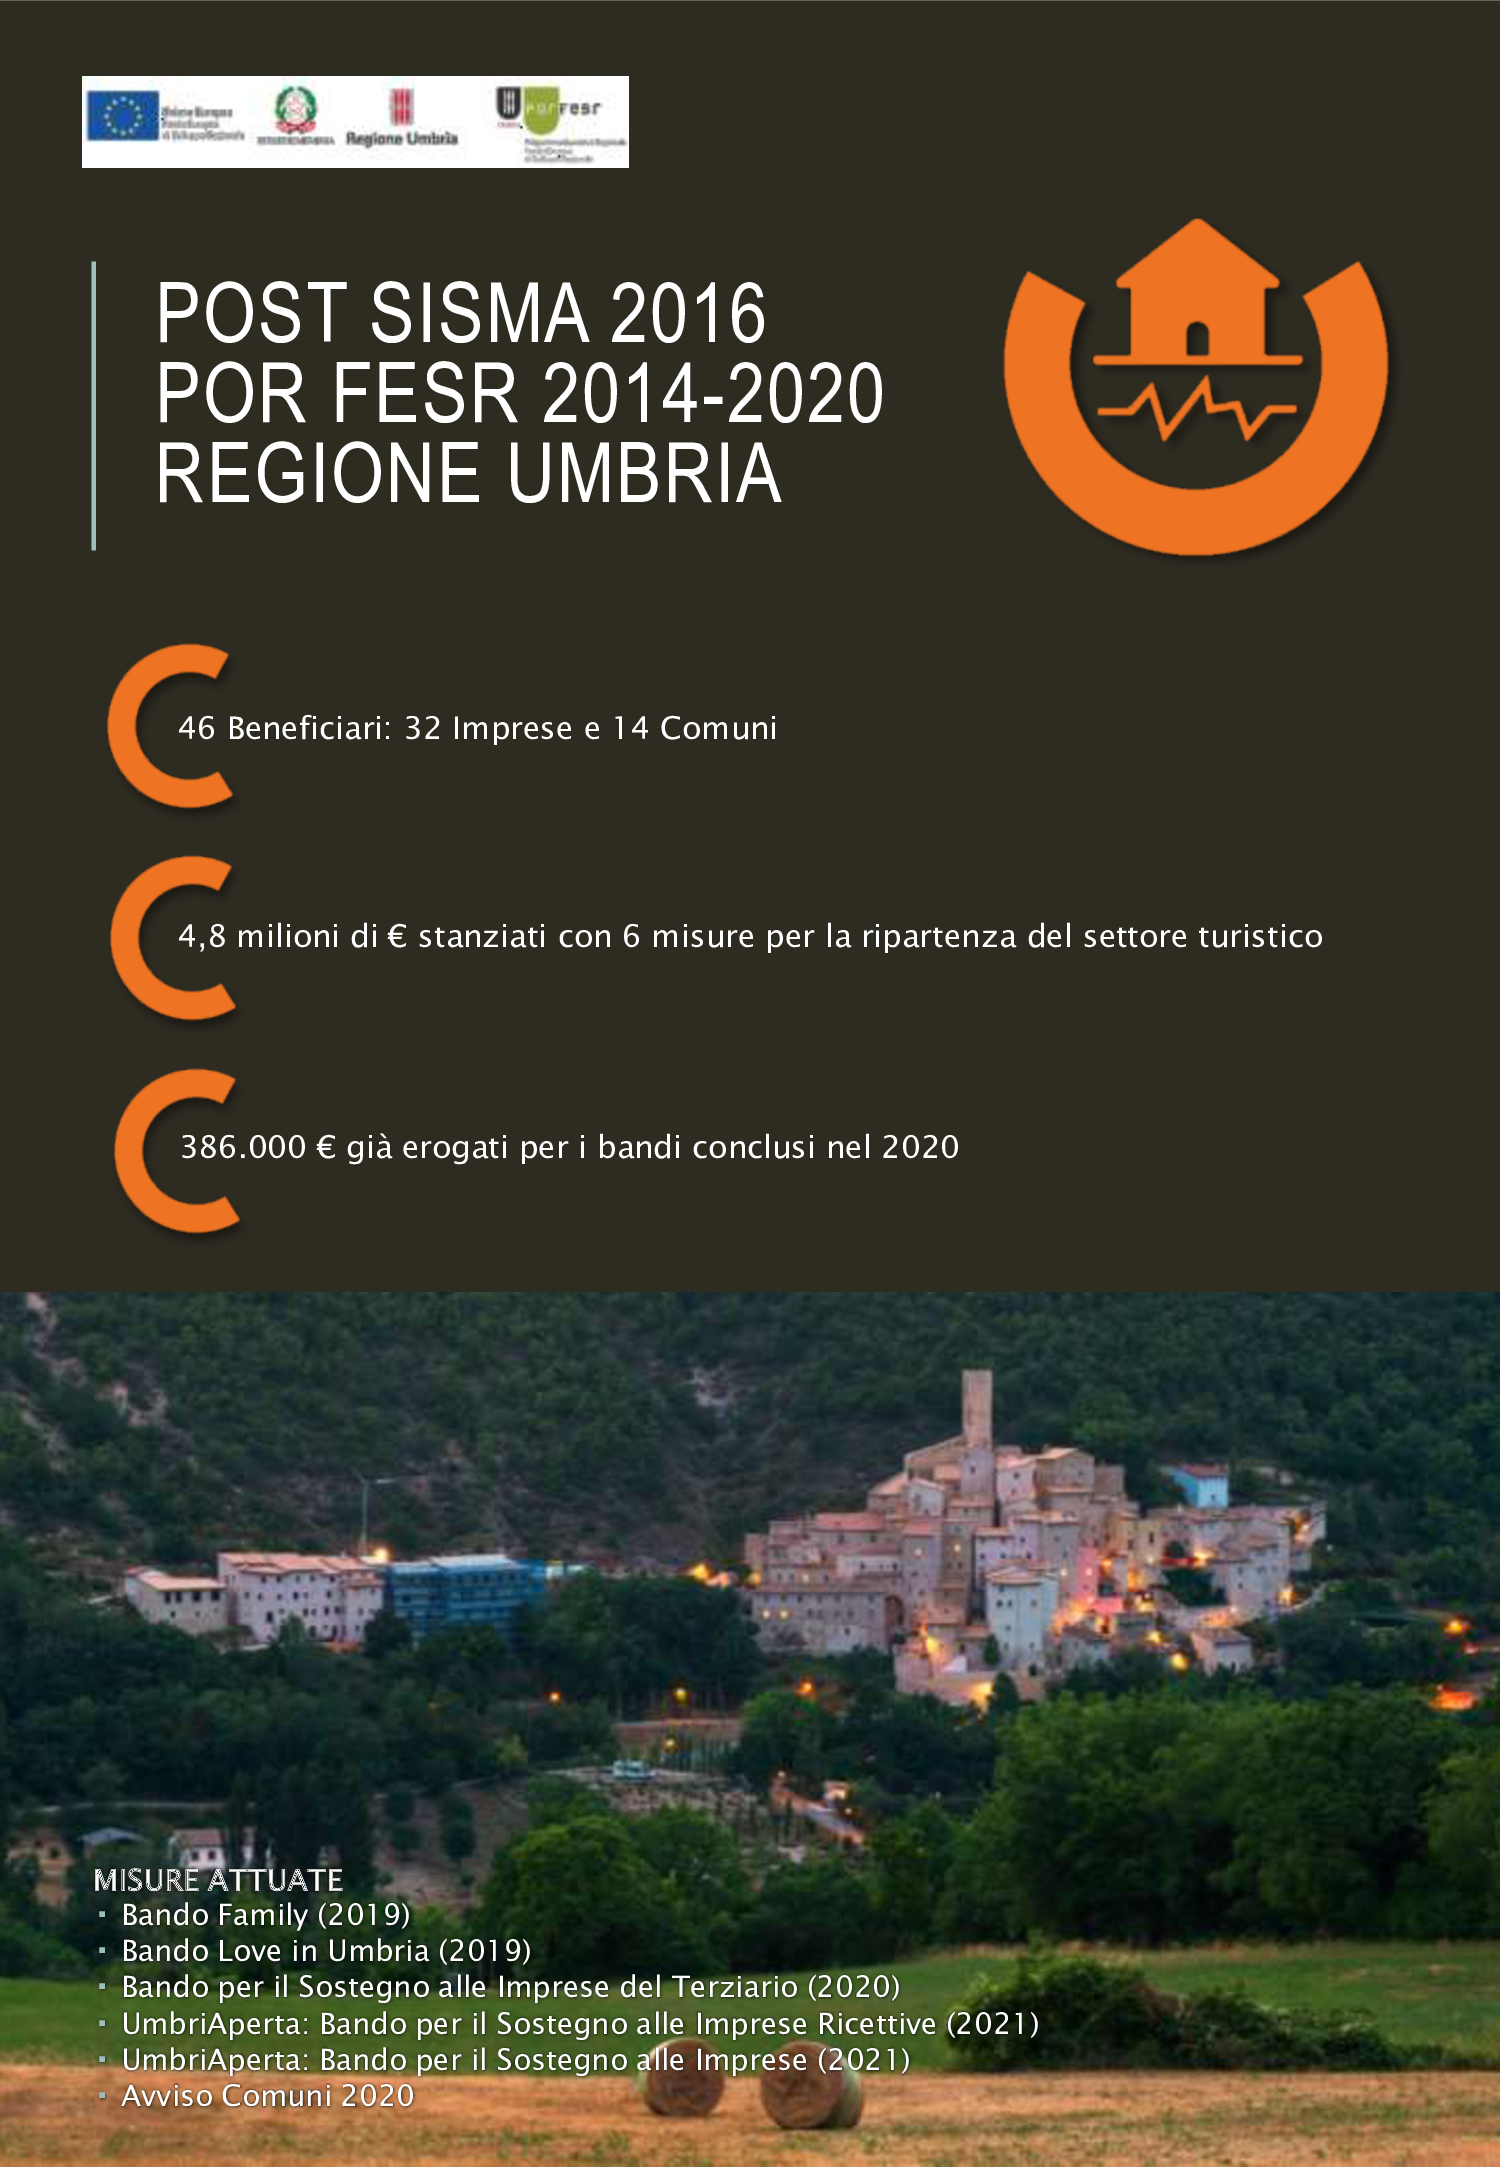 Dal sisma 2016 alla ricostruzione - L'Umbria in un approfondimento dell'Agenzia per la Coesione Territoriale